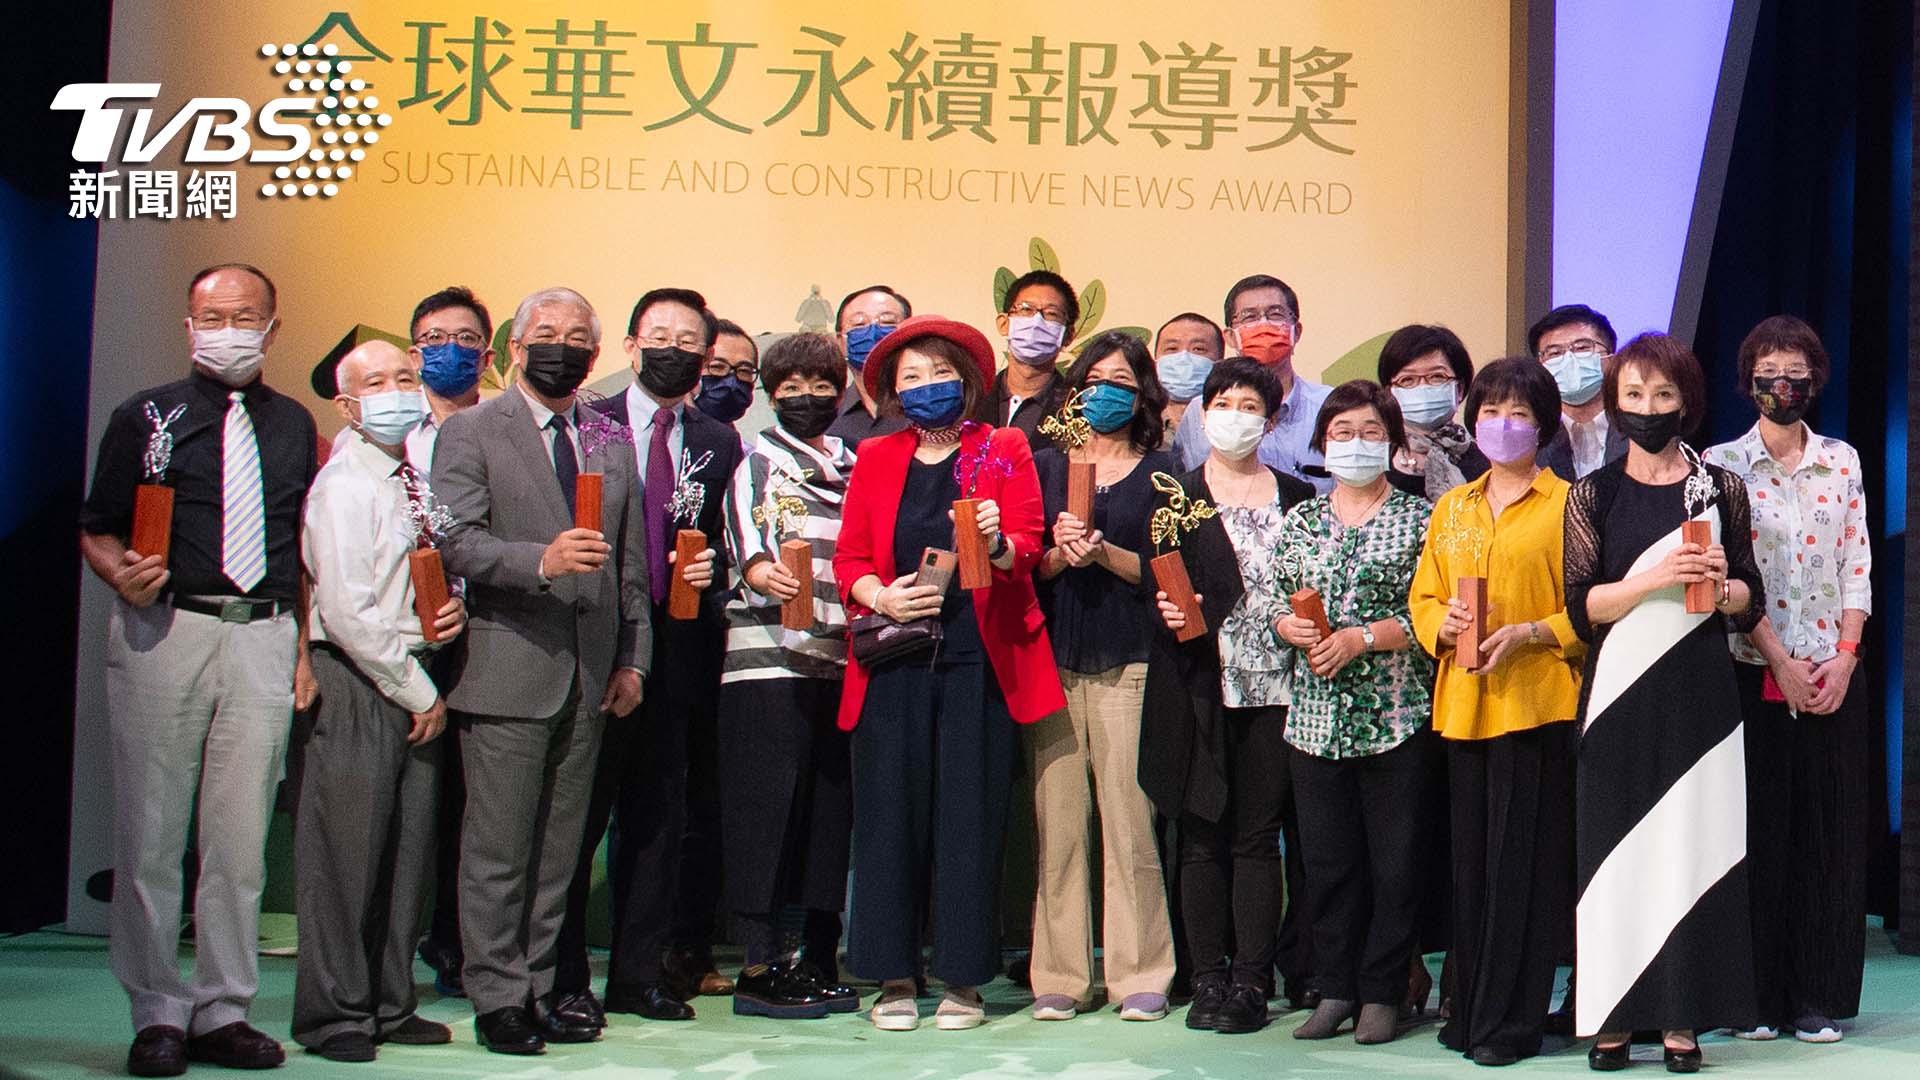 第五屆《全球華文永續報導獎》頒獎典禮。(圖/TVBS提供)